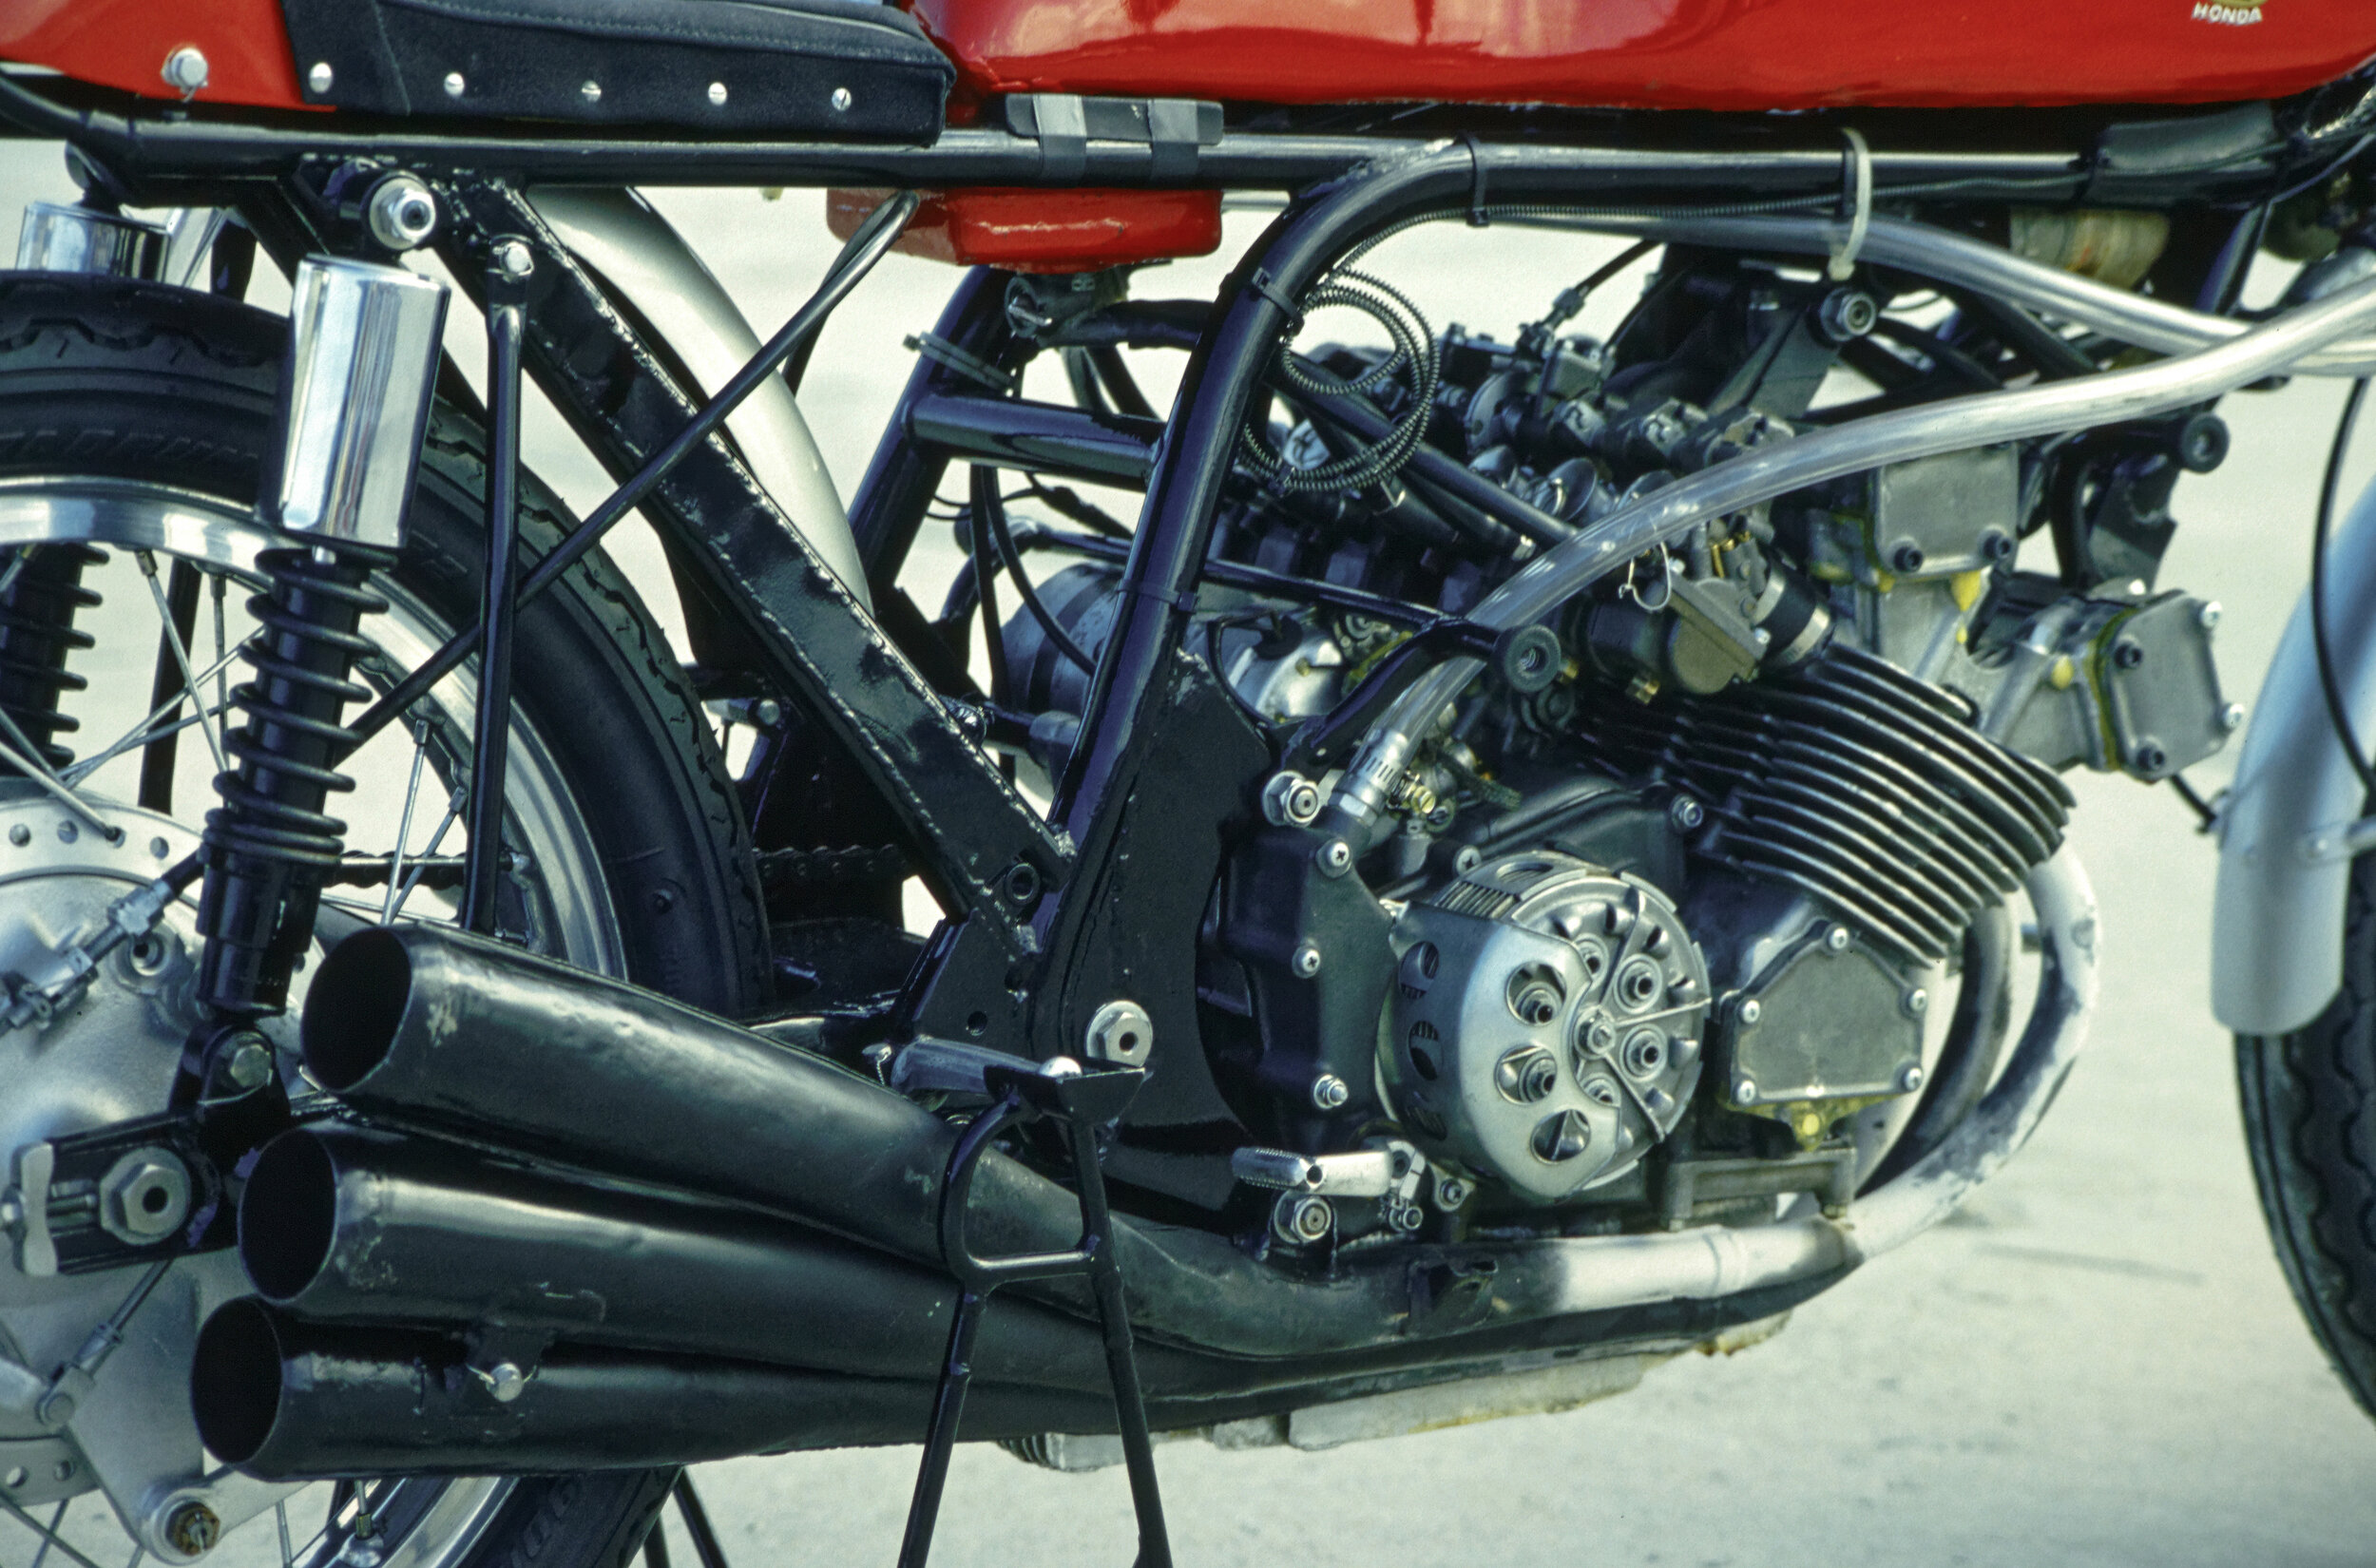 Honda RC166 250-6 (41)_DxO.jpg